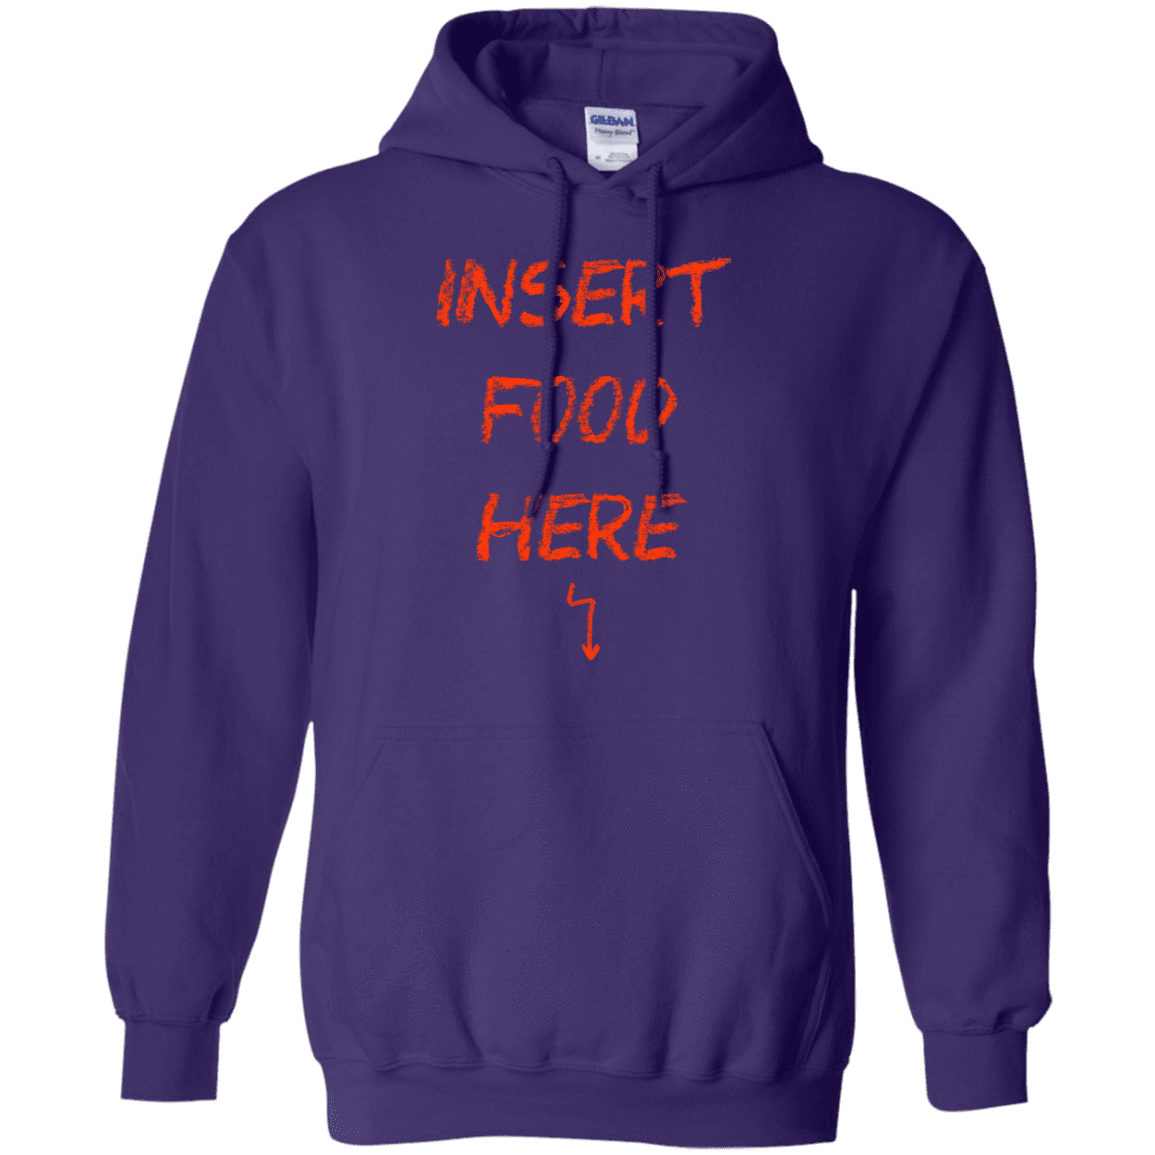 Sweatshirts Purple / S Insert Food Pullover Hoodie